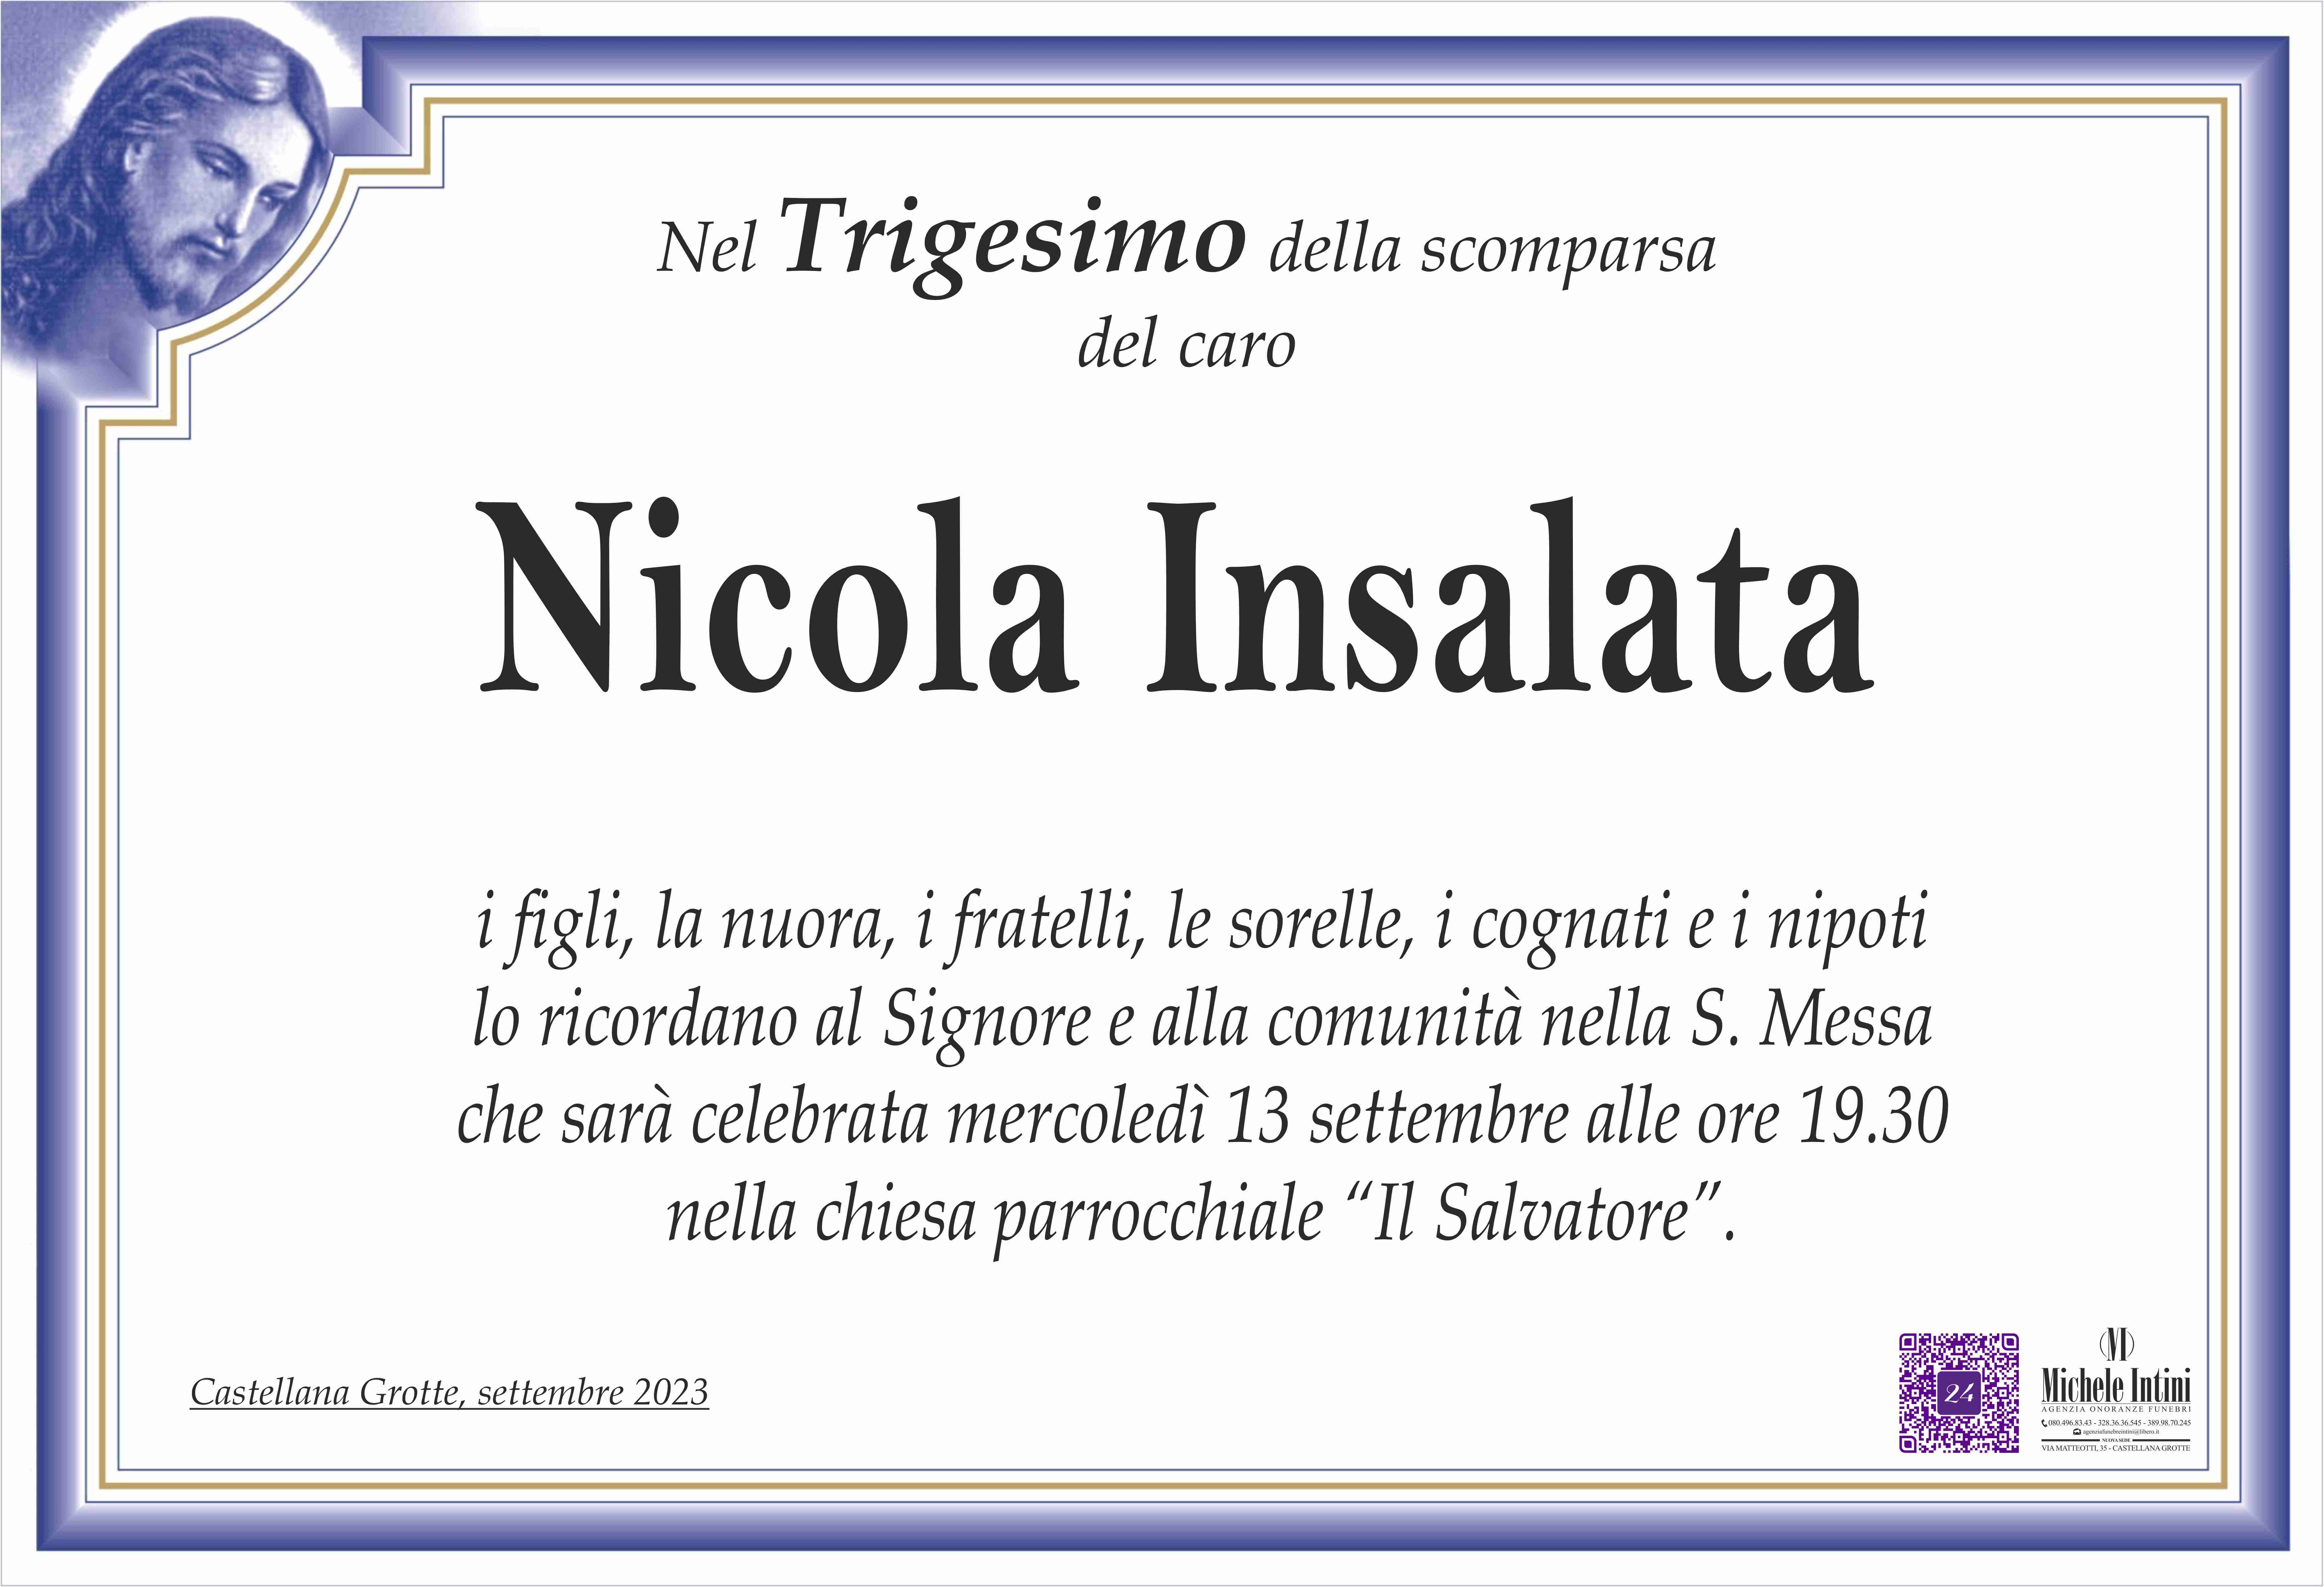 Nicola Insalata